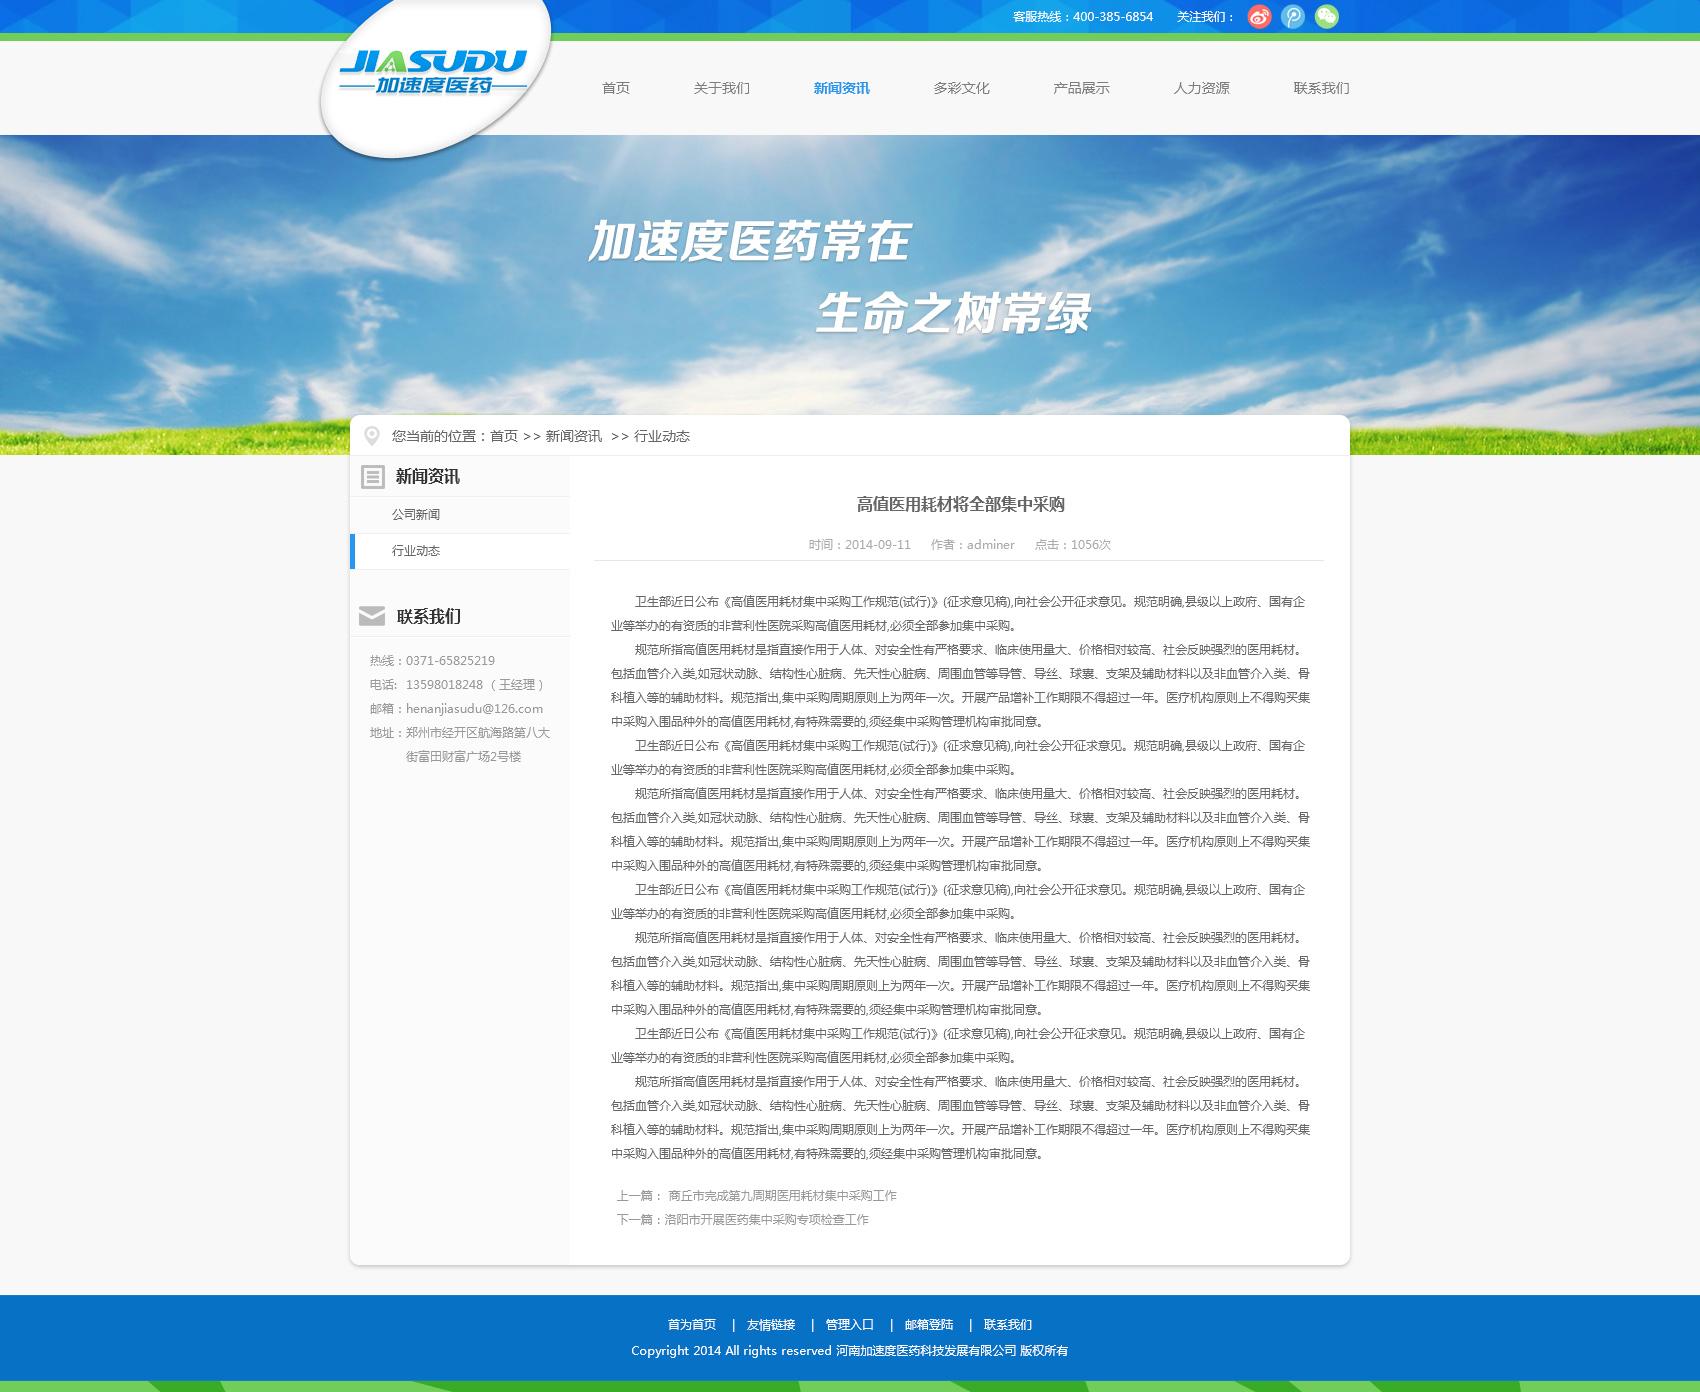 河南加速度医药公司网站制作产品页面设计效果图